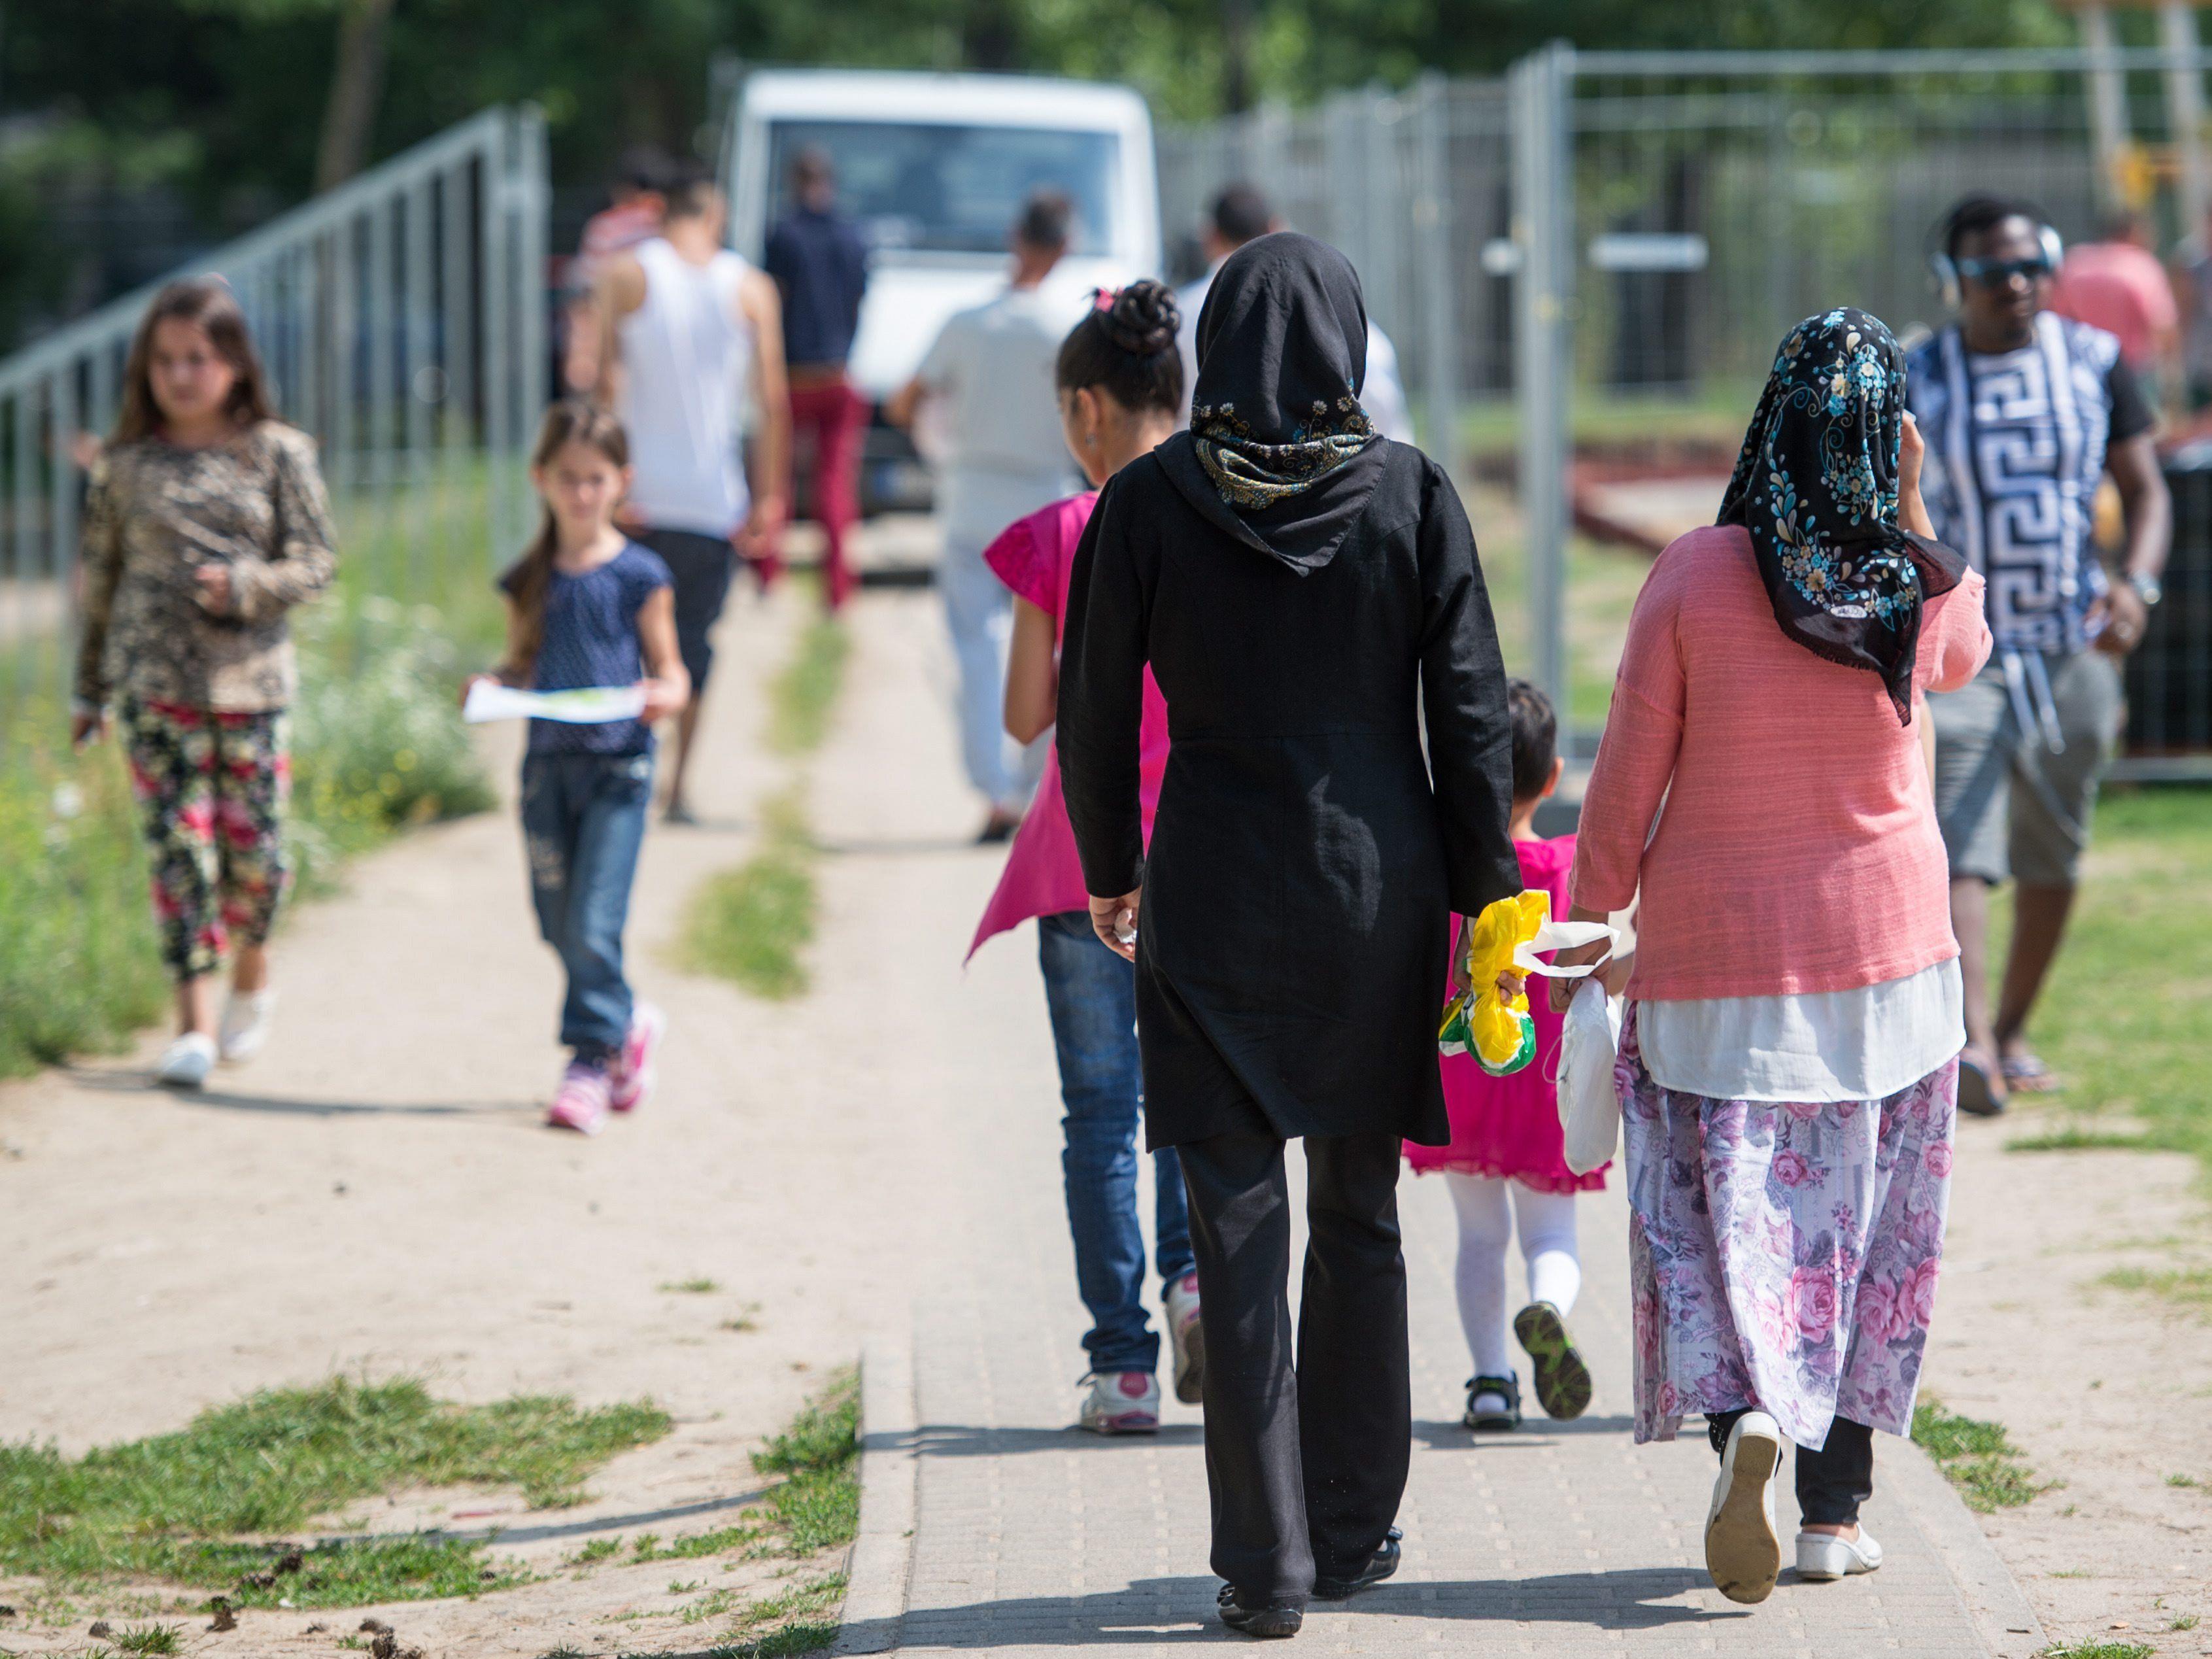 Für Asylwerber aus sicheren Herkunftsländern will Union deutliche Verringerung - SPD dagegen.